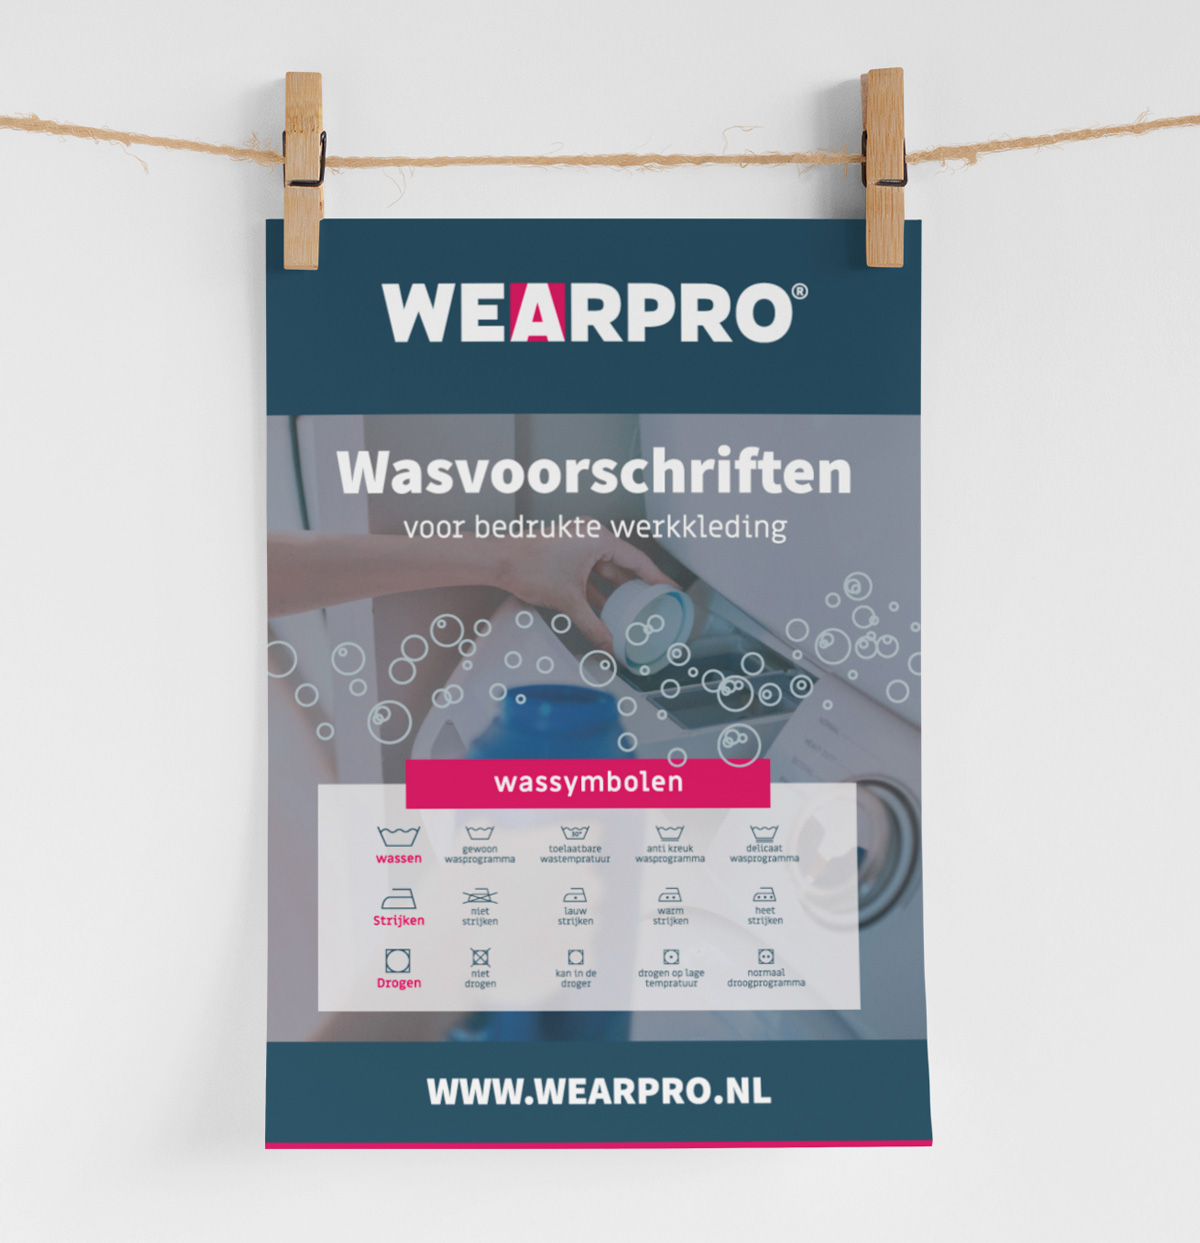 Wearpro-Heemskerk-Bedrukte-Werkkleding-Voor-Fysieke-Arbeid-Bestellen-Wasvoorschriften